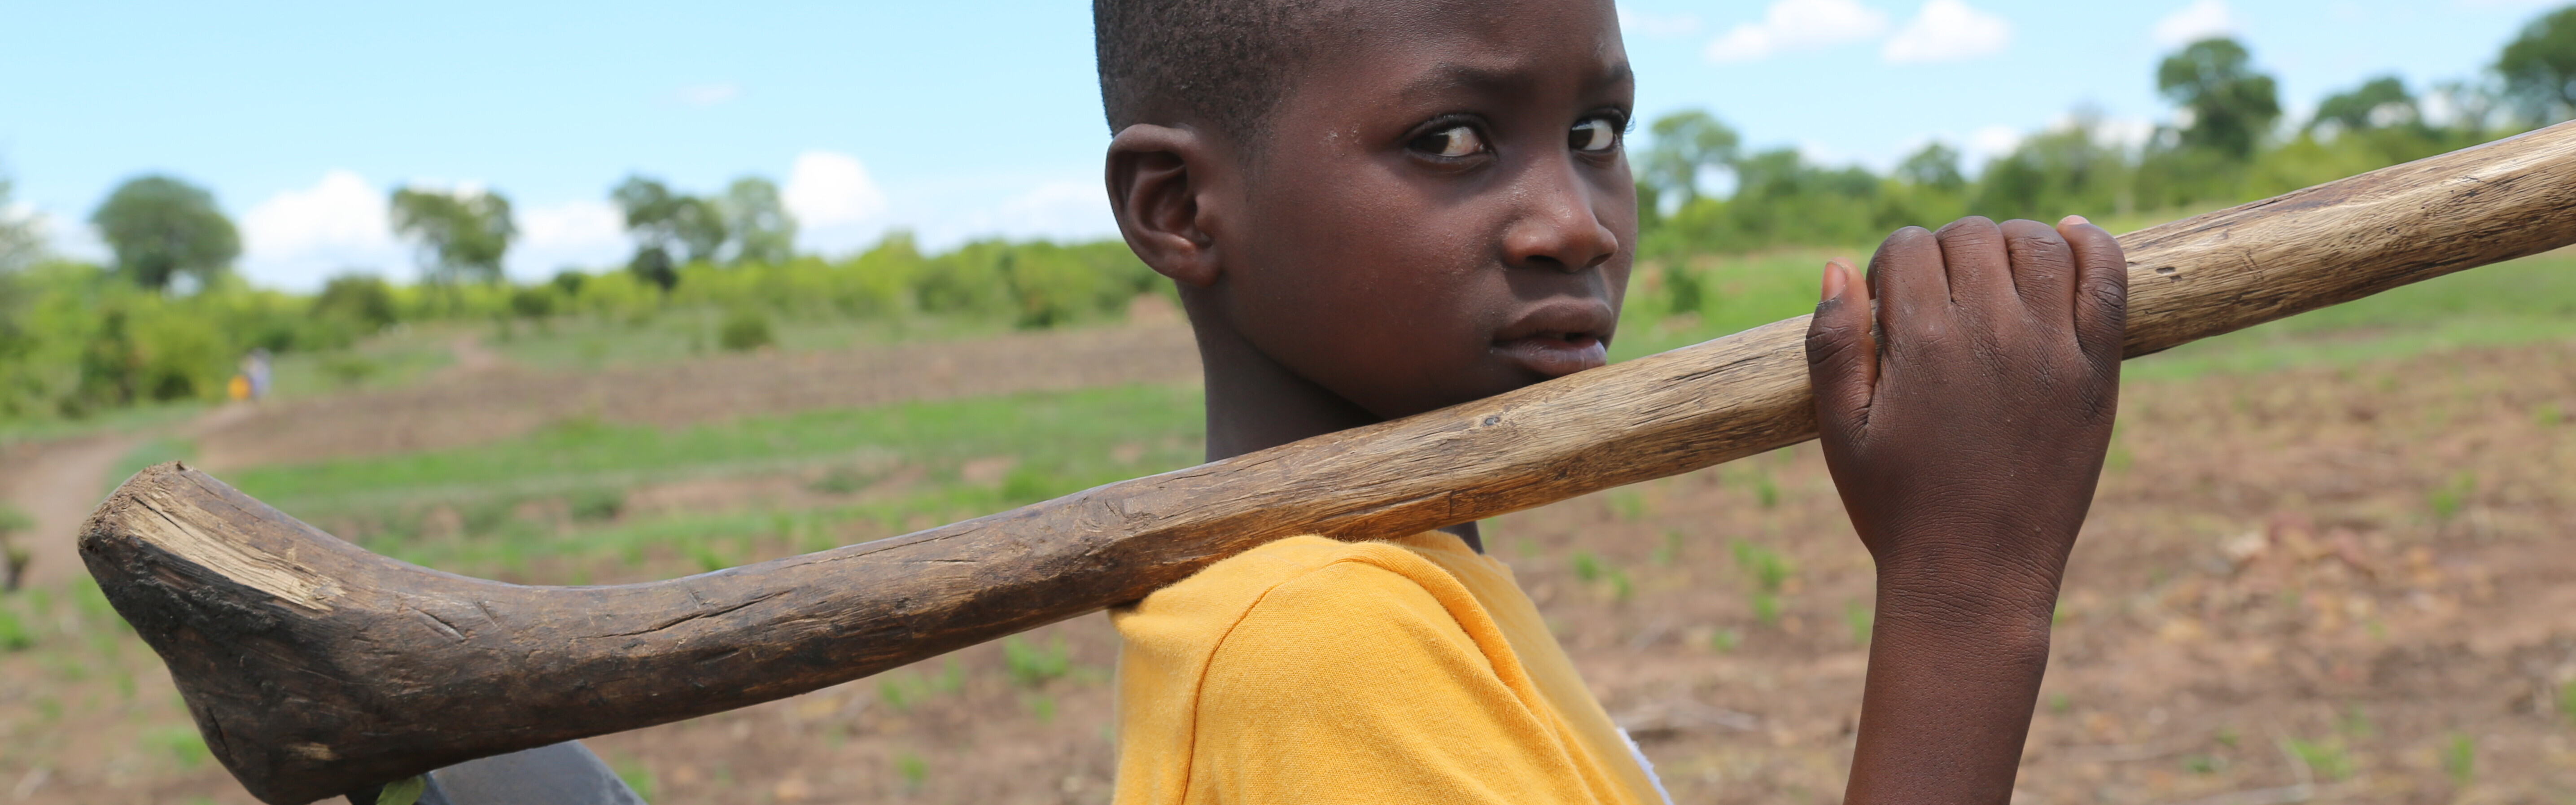 Der zehnjährige Martin hält eine Spitzhacke in der Hand. Er ist Opfer der Auswirkungen von El Niño.